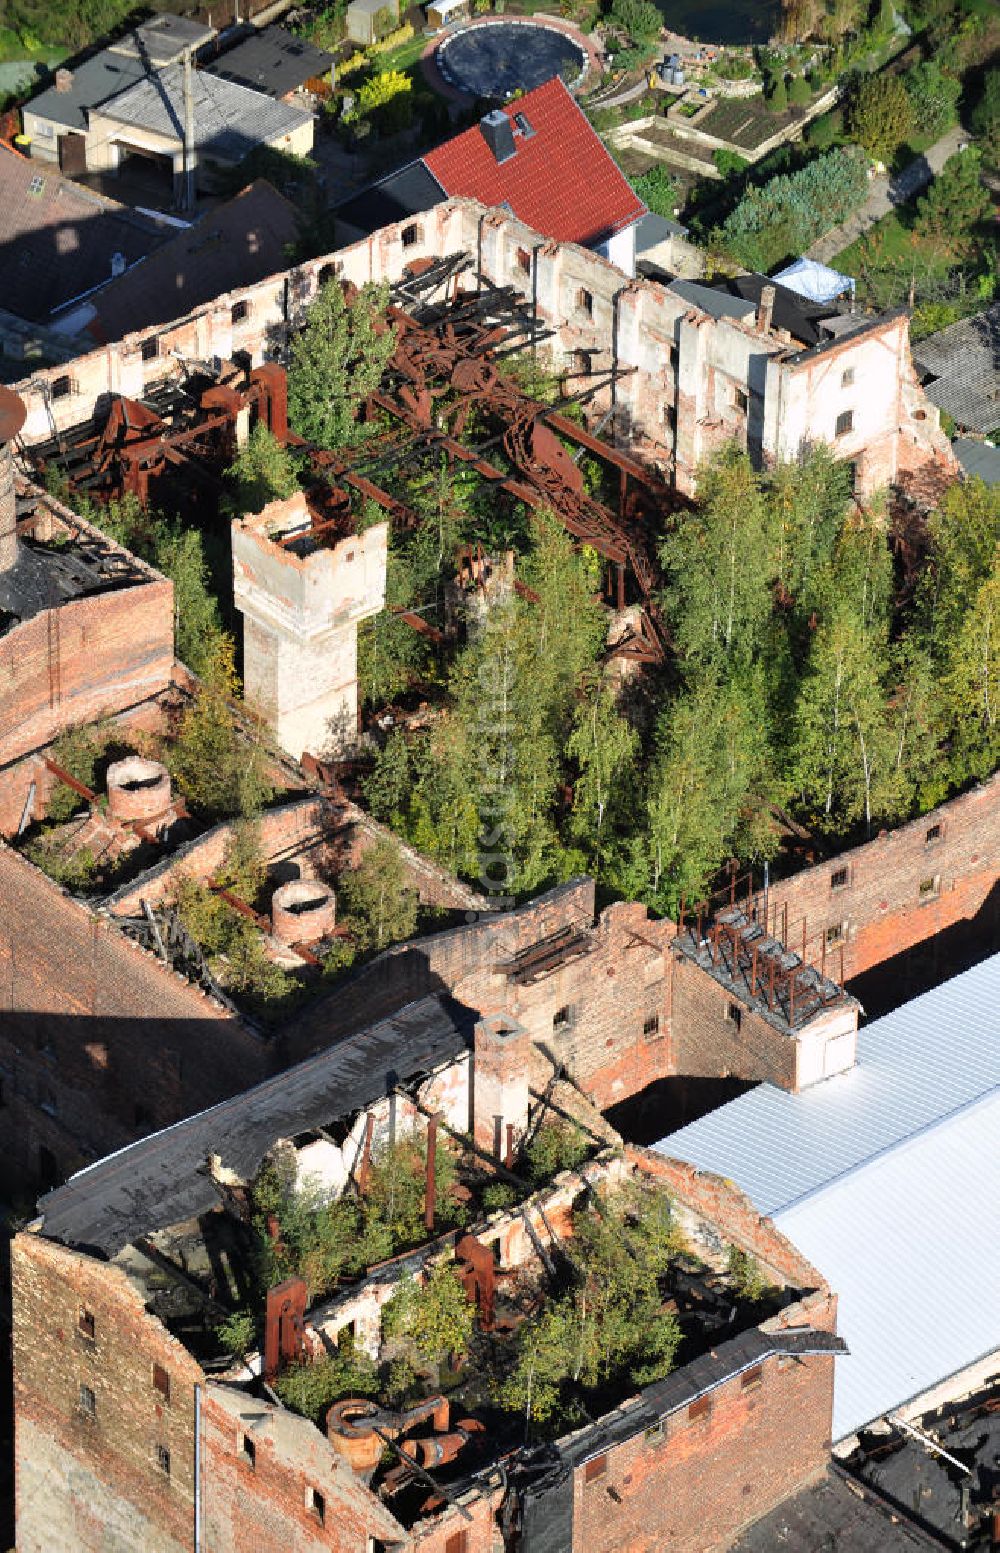 Luftbild Nienburg / Saale - Das Ruinengebäude der alten Malzfabrik in Nienburg an der Saale